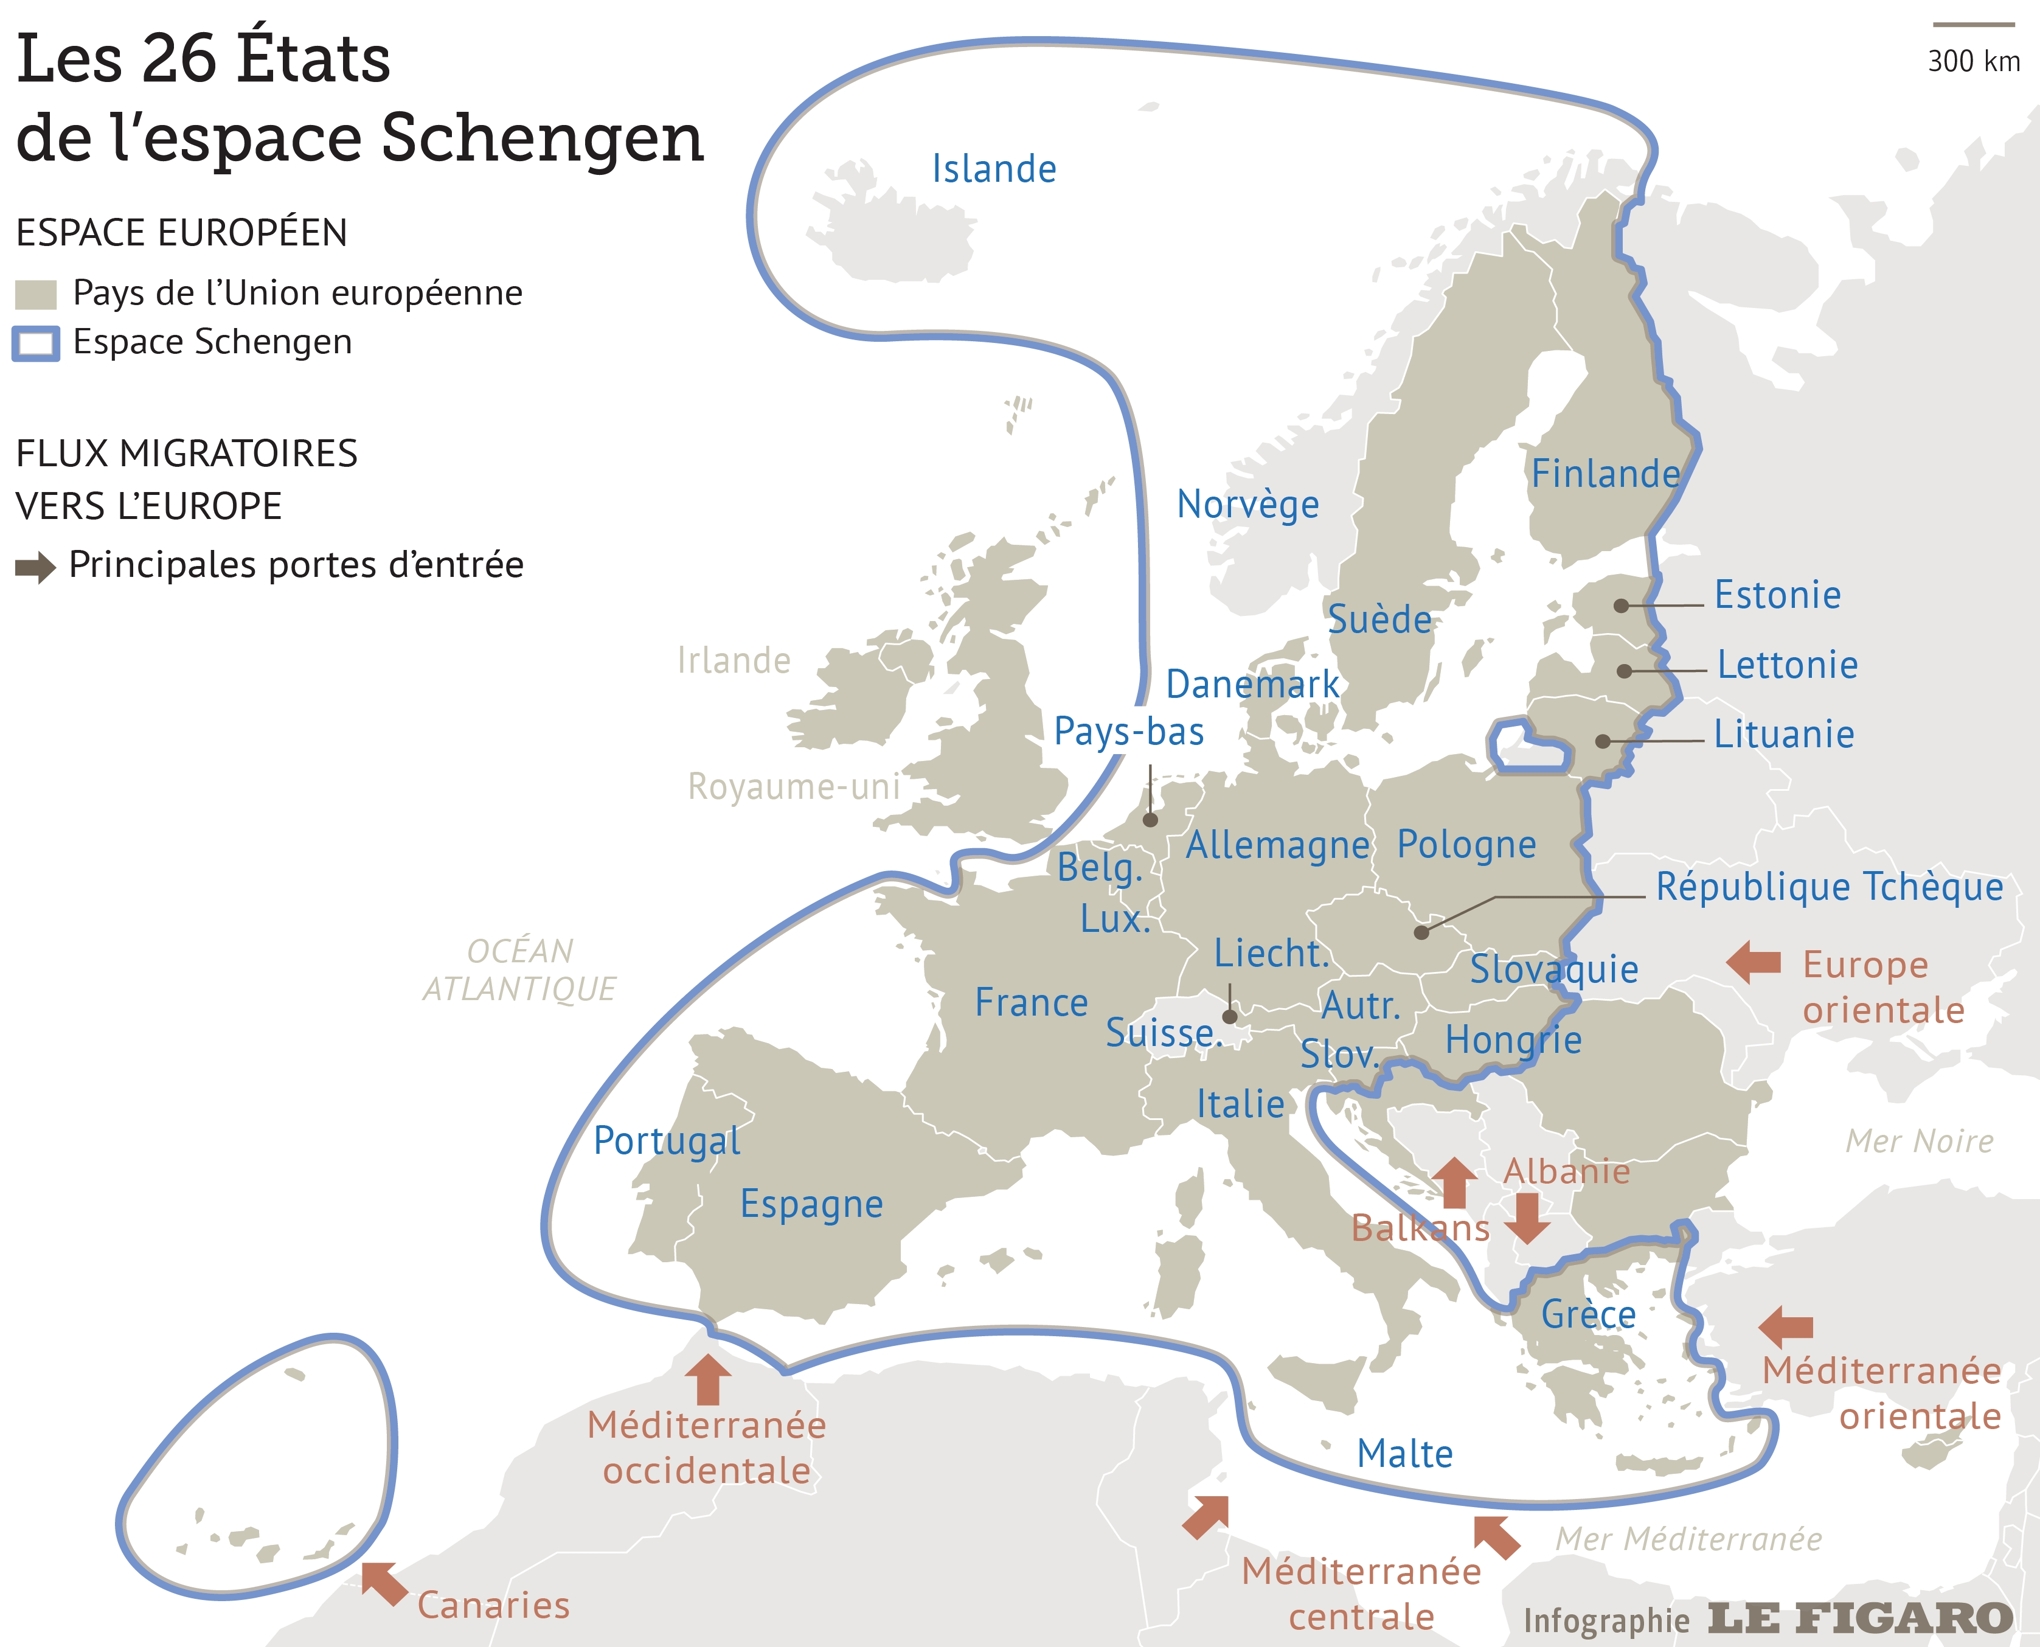 Géographie de Schengen © Infographie Le Figaro